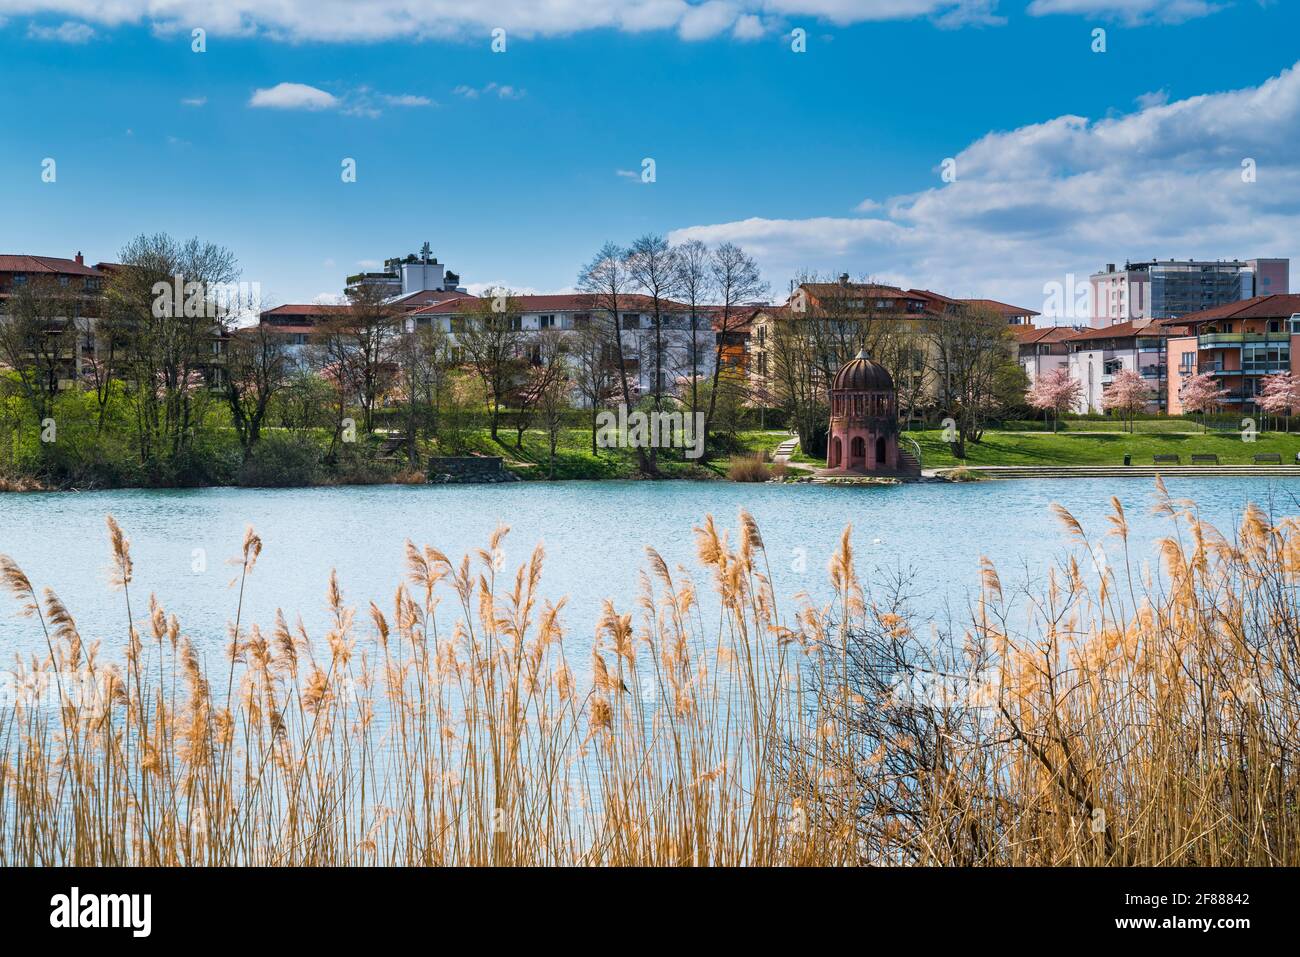 Alemania, Freiburg im Breisgau parque de la ciudad seepark agua del lago en el distrito urbano hermoso de casas nobles detrás de la caña en el día soleado del verano Foto de stock